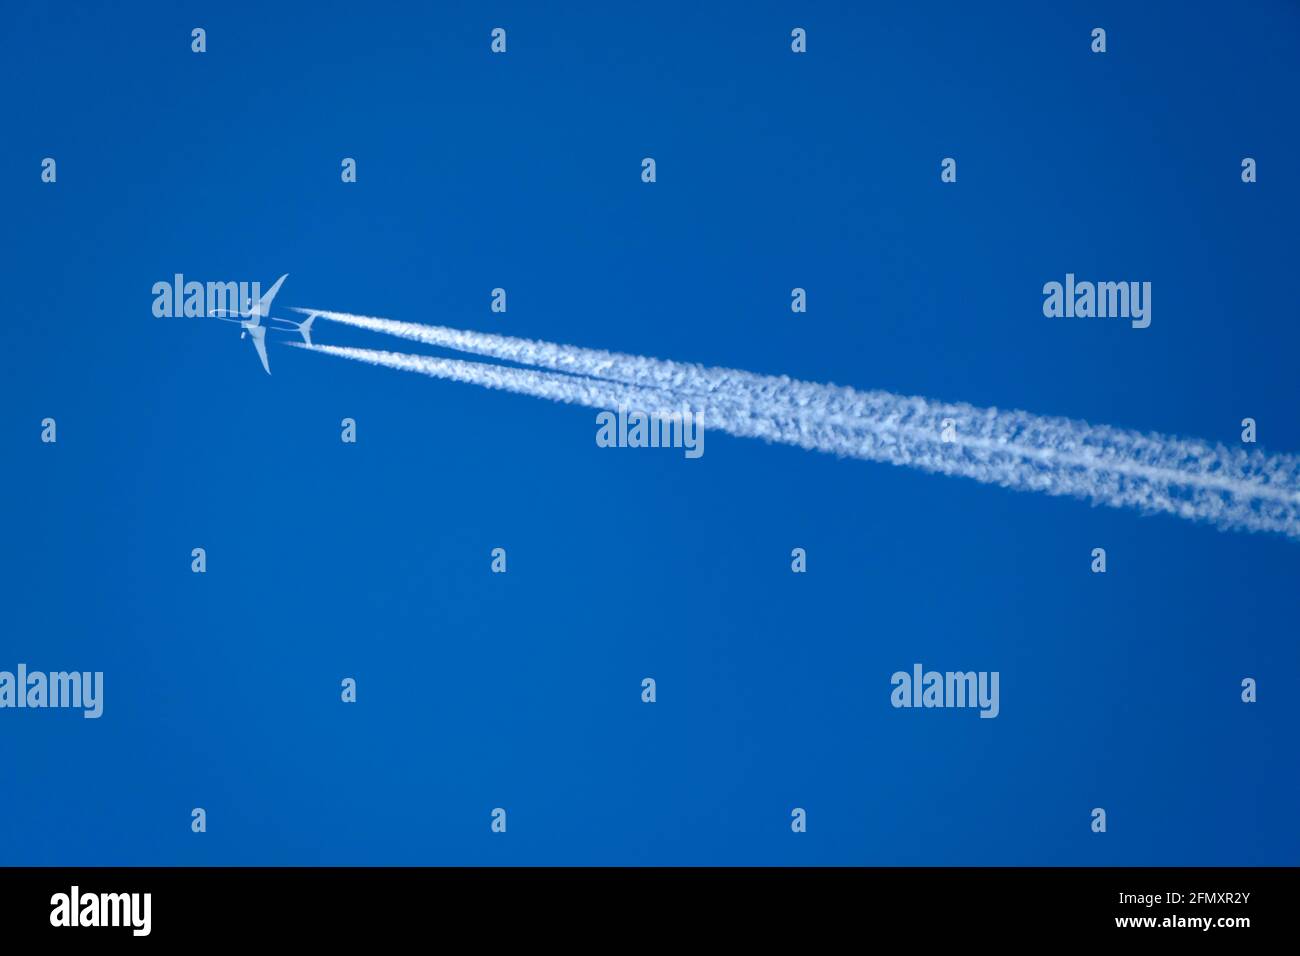 Boeing 787, avion à deux jets, traversant le ciel bleu Banque D'Images